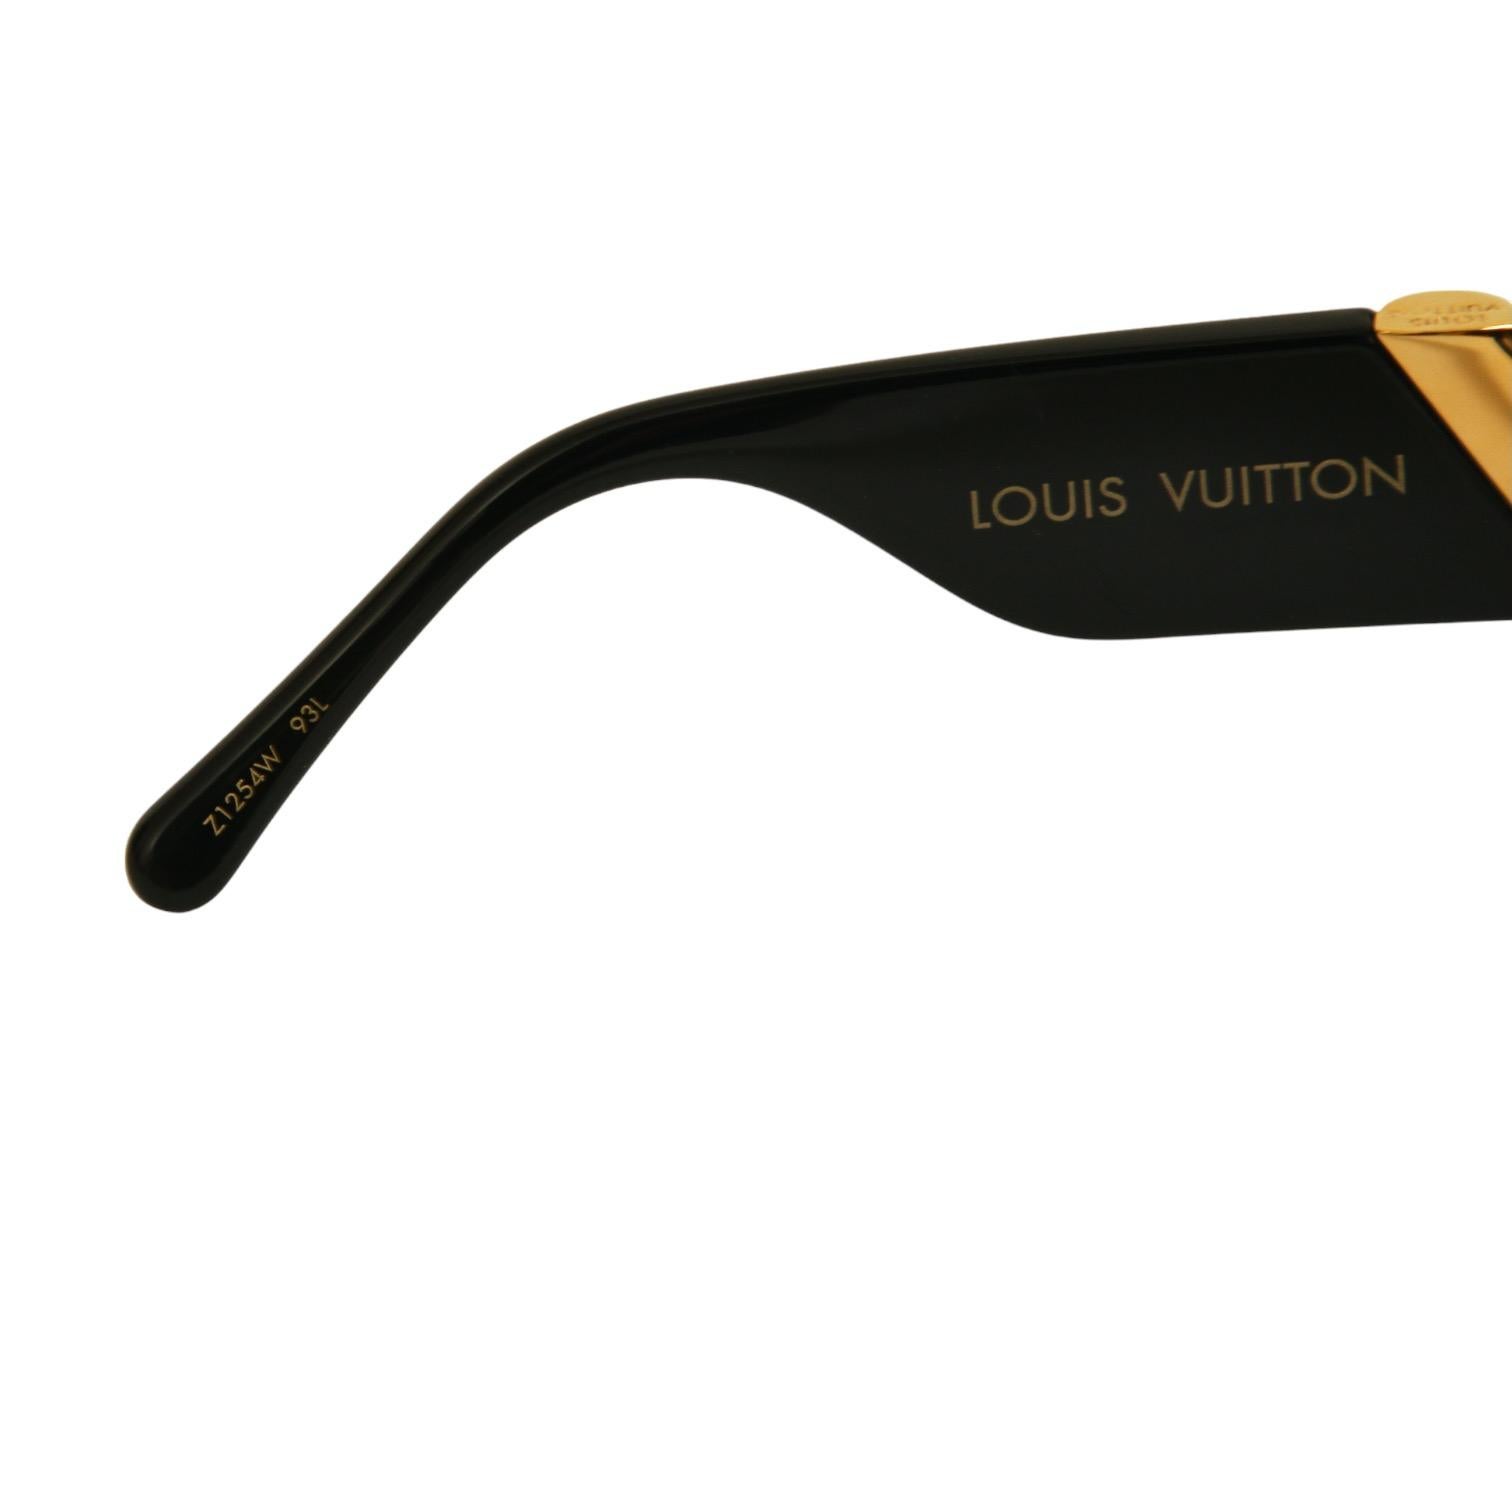 LOUIS VUITTON Black Sunglasses MY FAIR LADY Acetate Grey Gradient Lens Z1254W 3